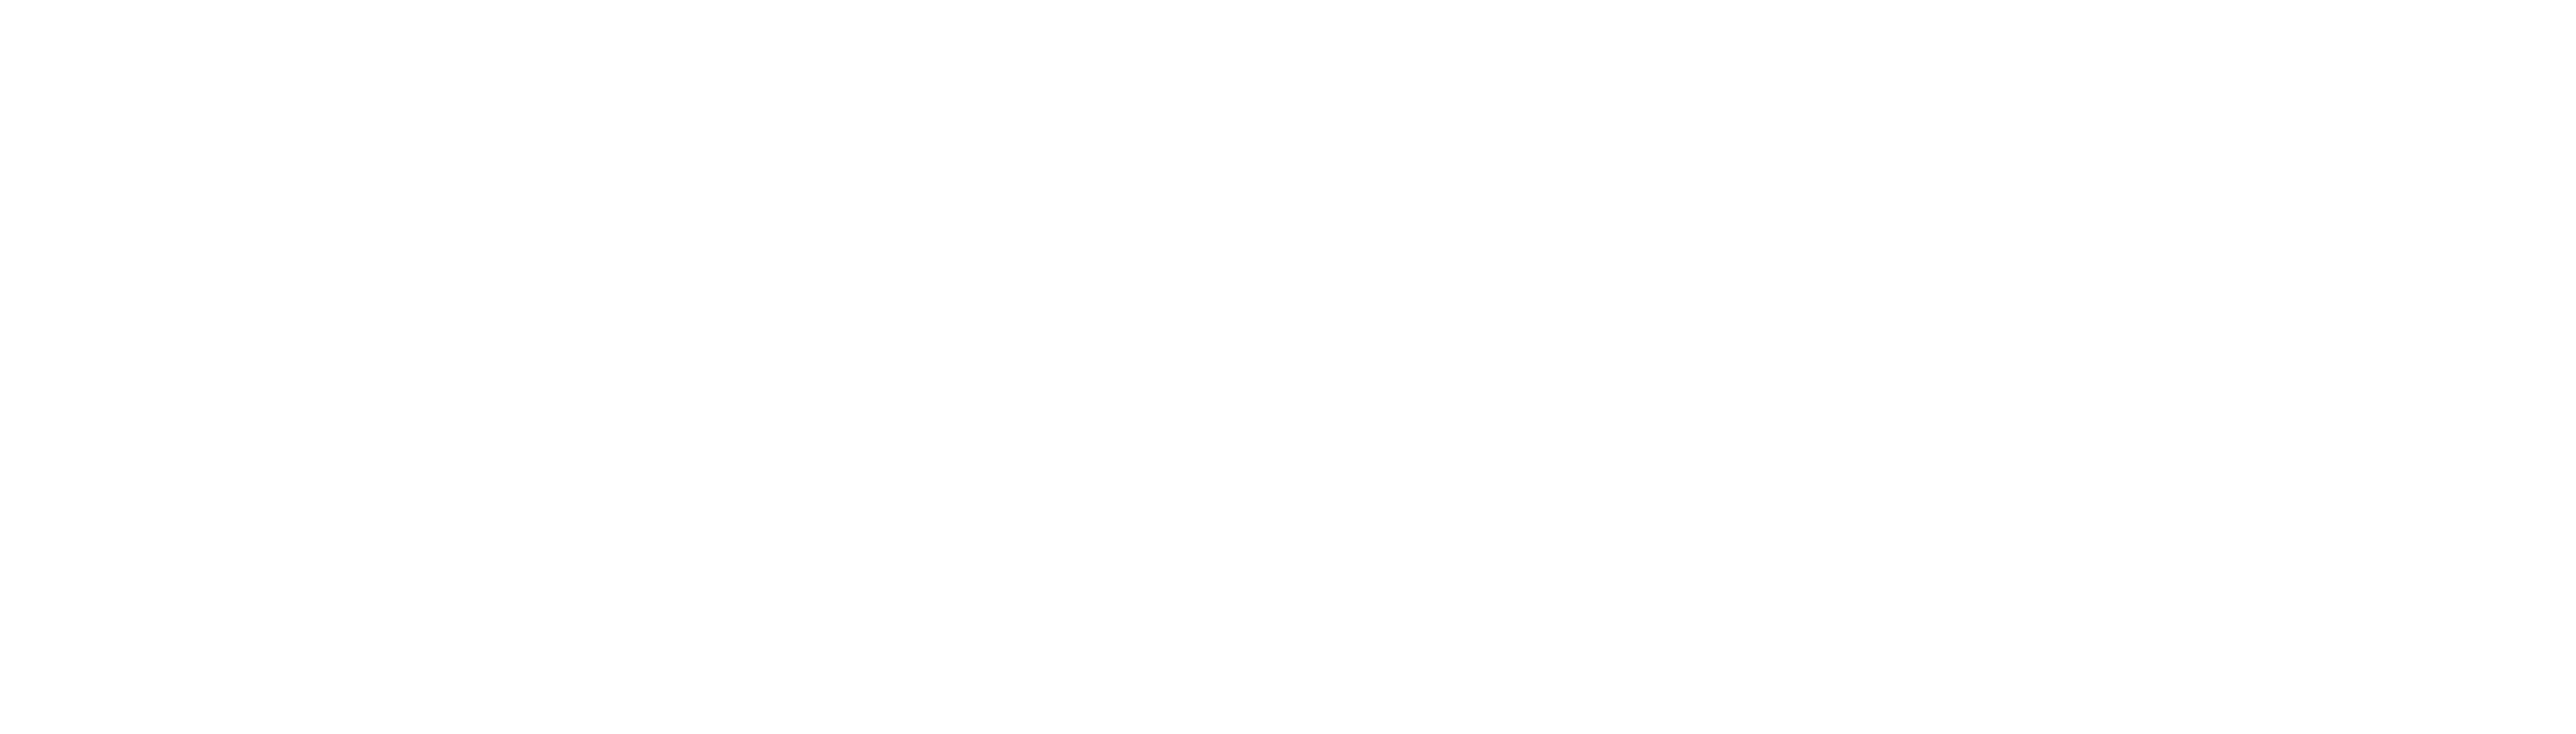 MAXWELL & WEBB _ Footer logo